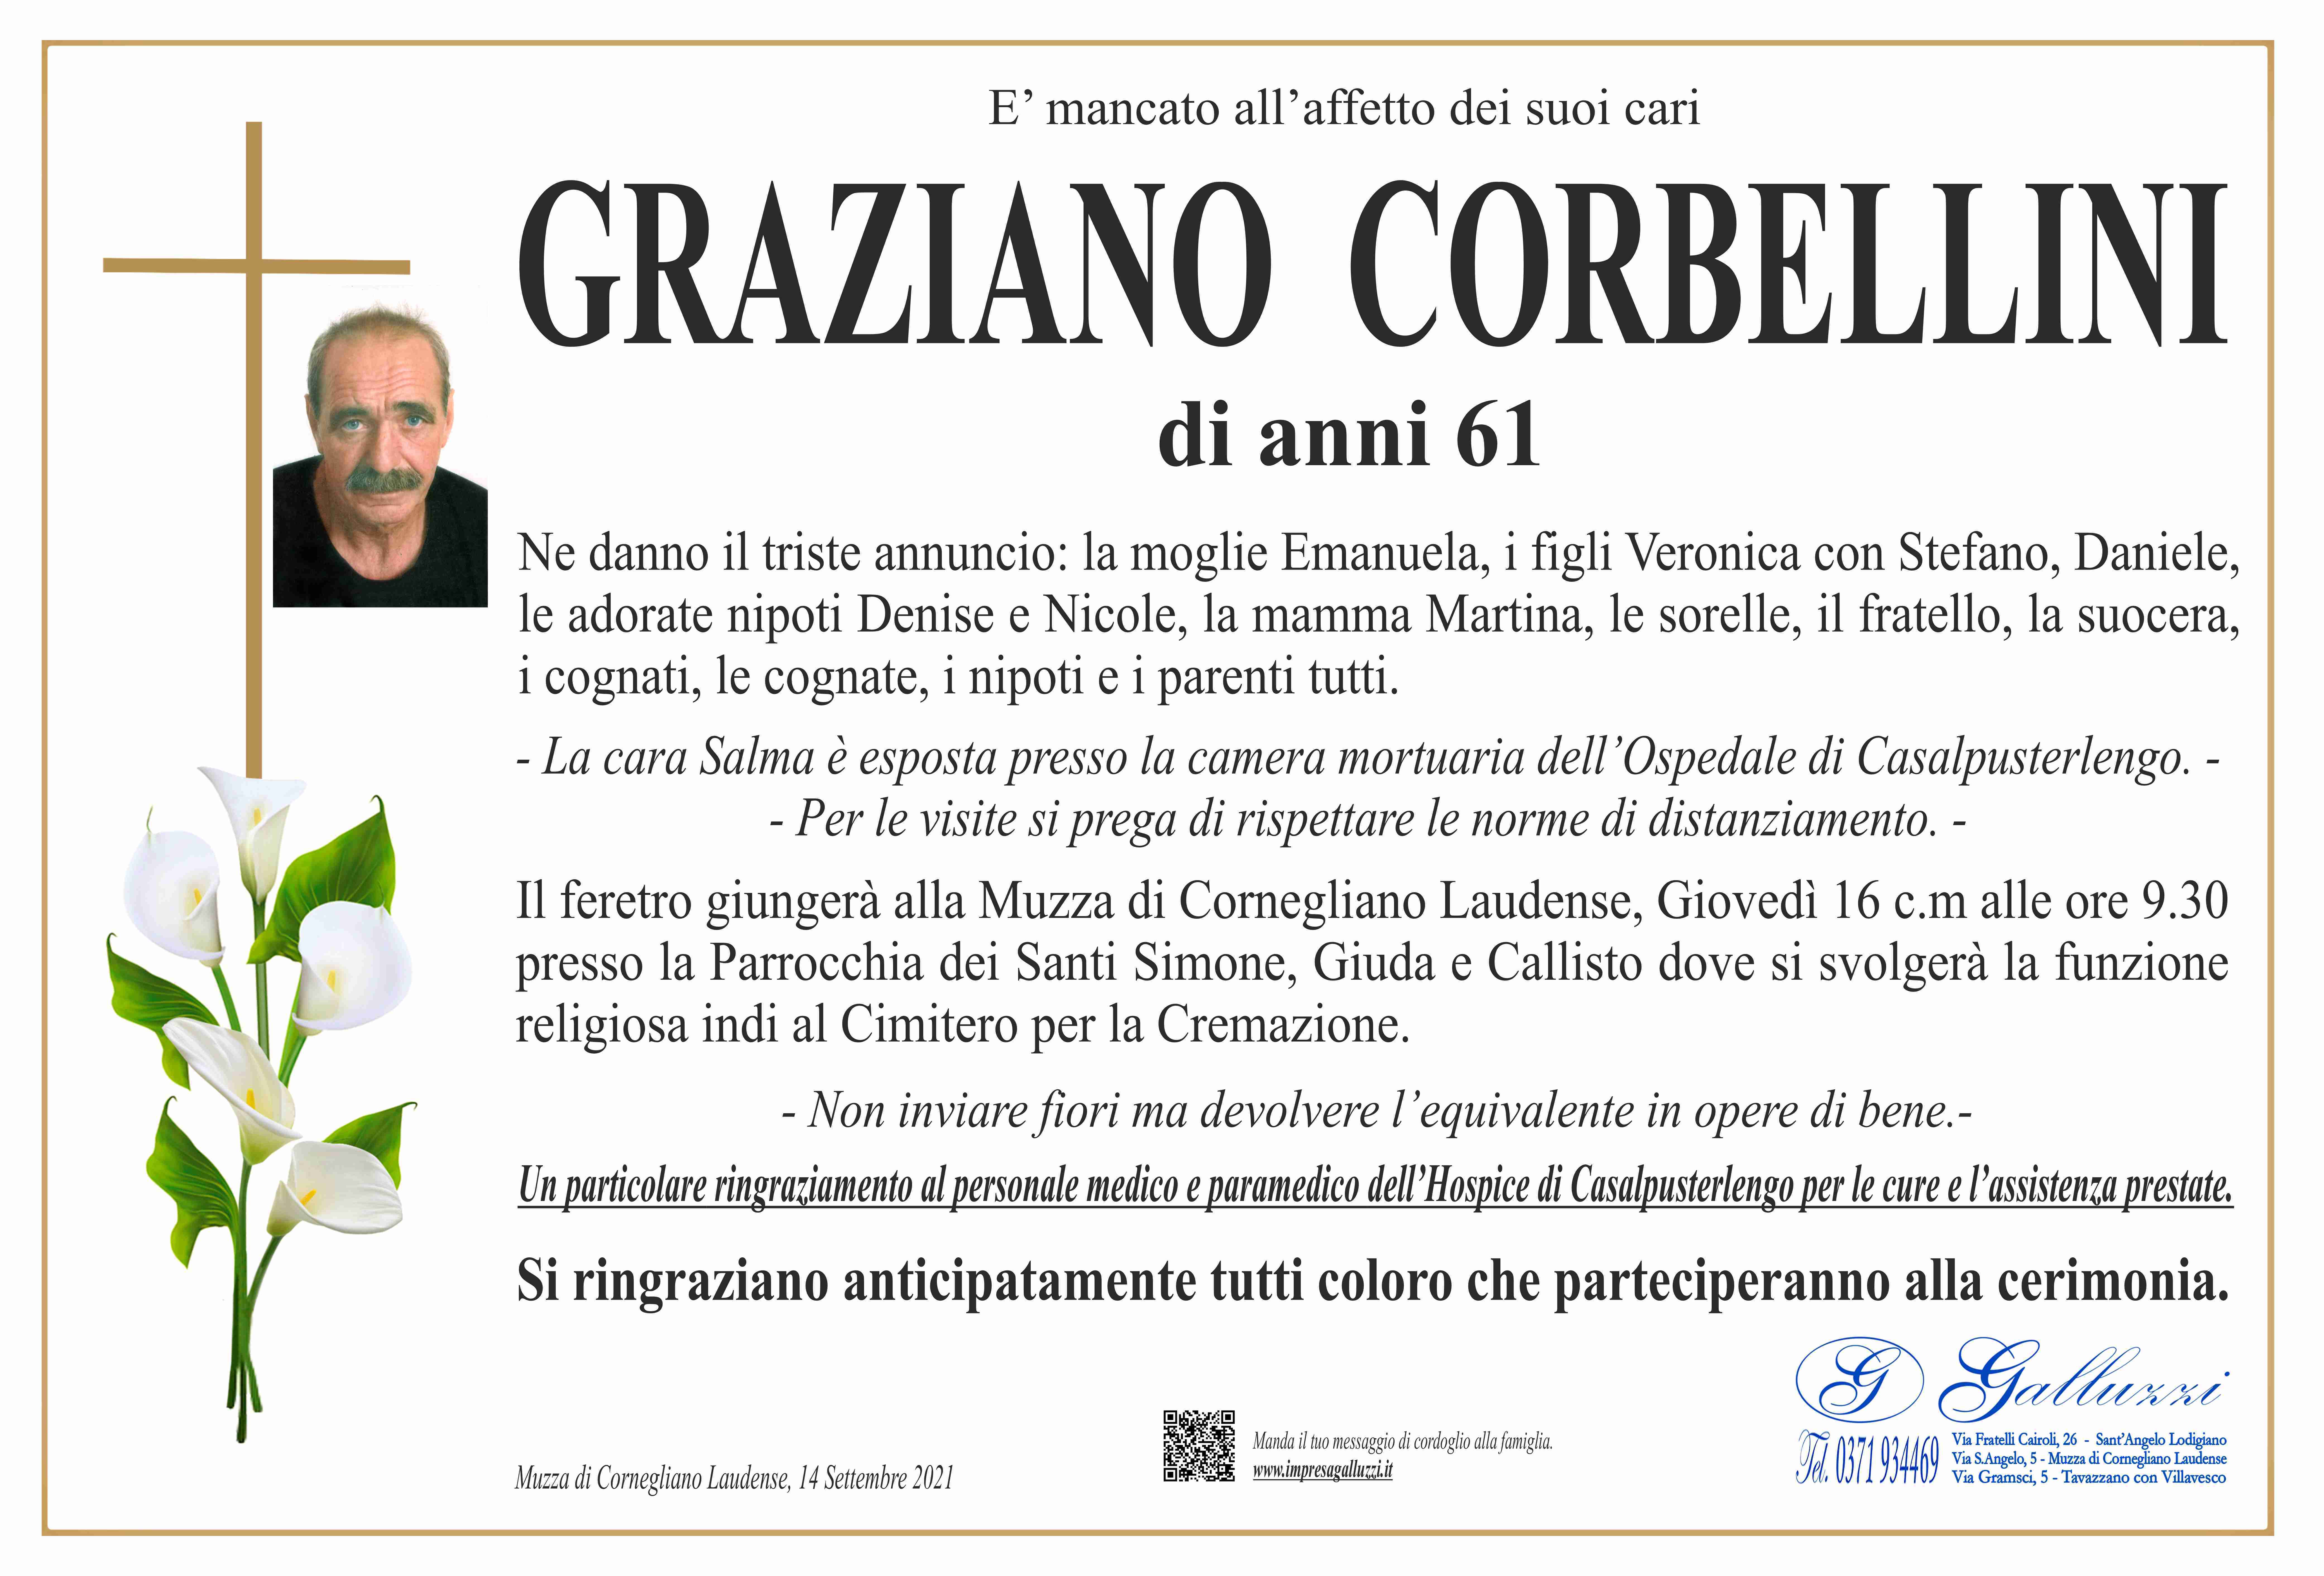 Graziano Corbellini